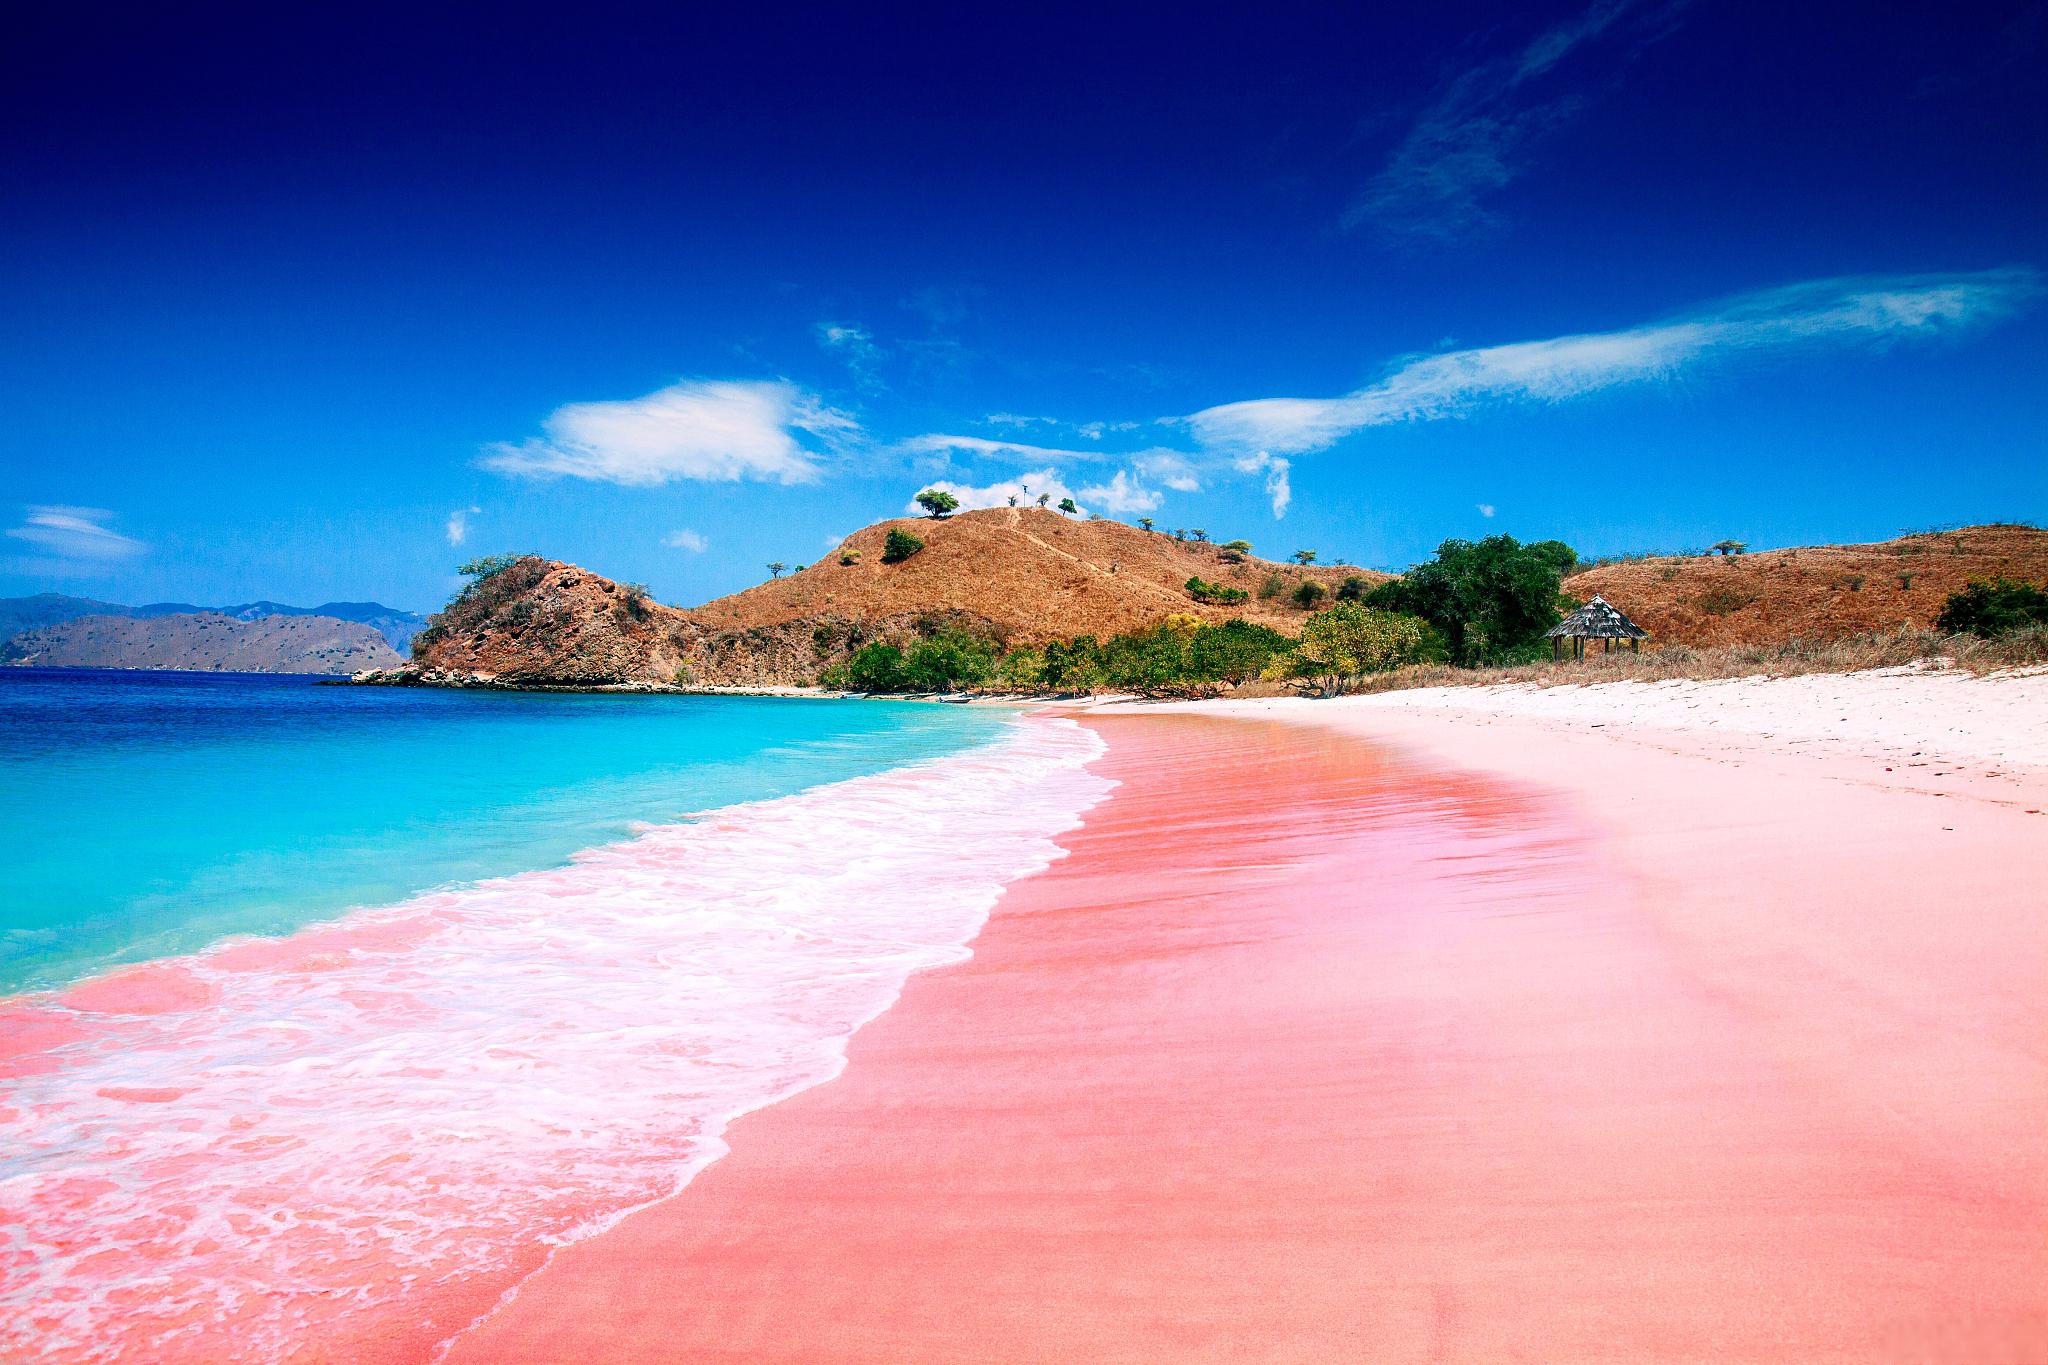 粉红沙滩(红山咀):一片热情如火的浪漫之地 想象一下,在阳光明媚的